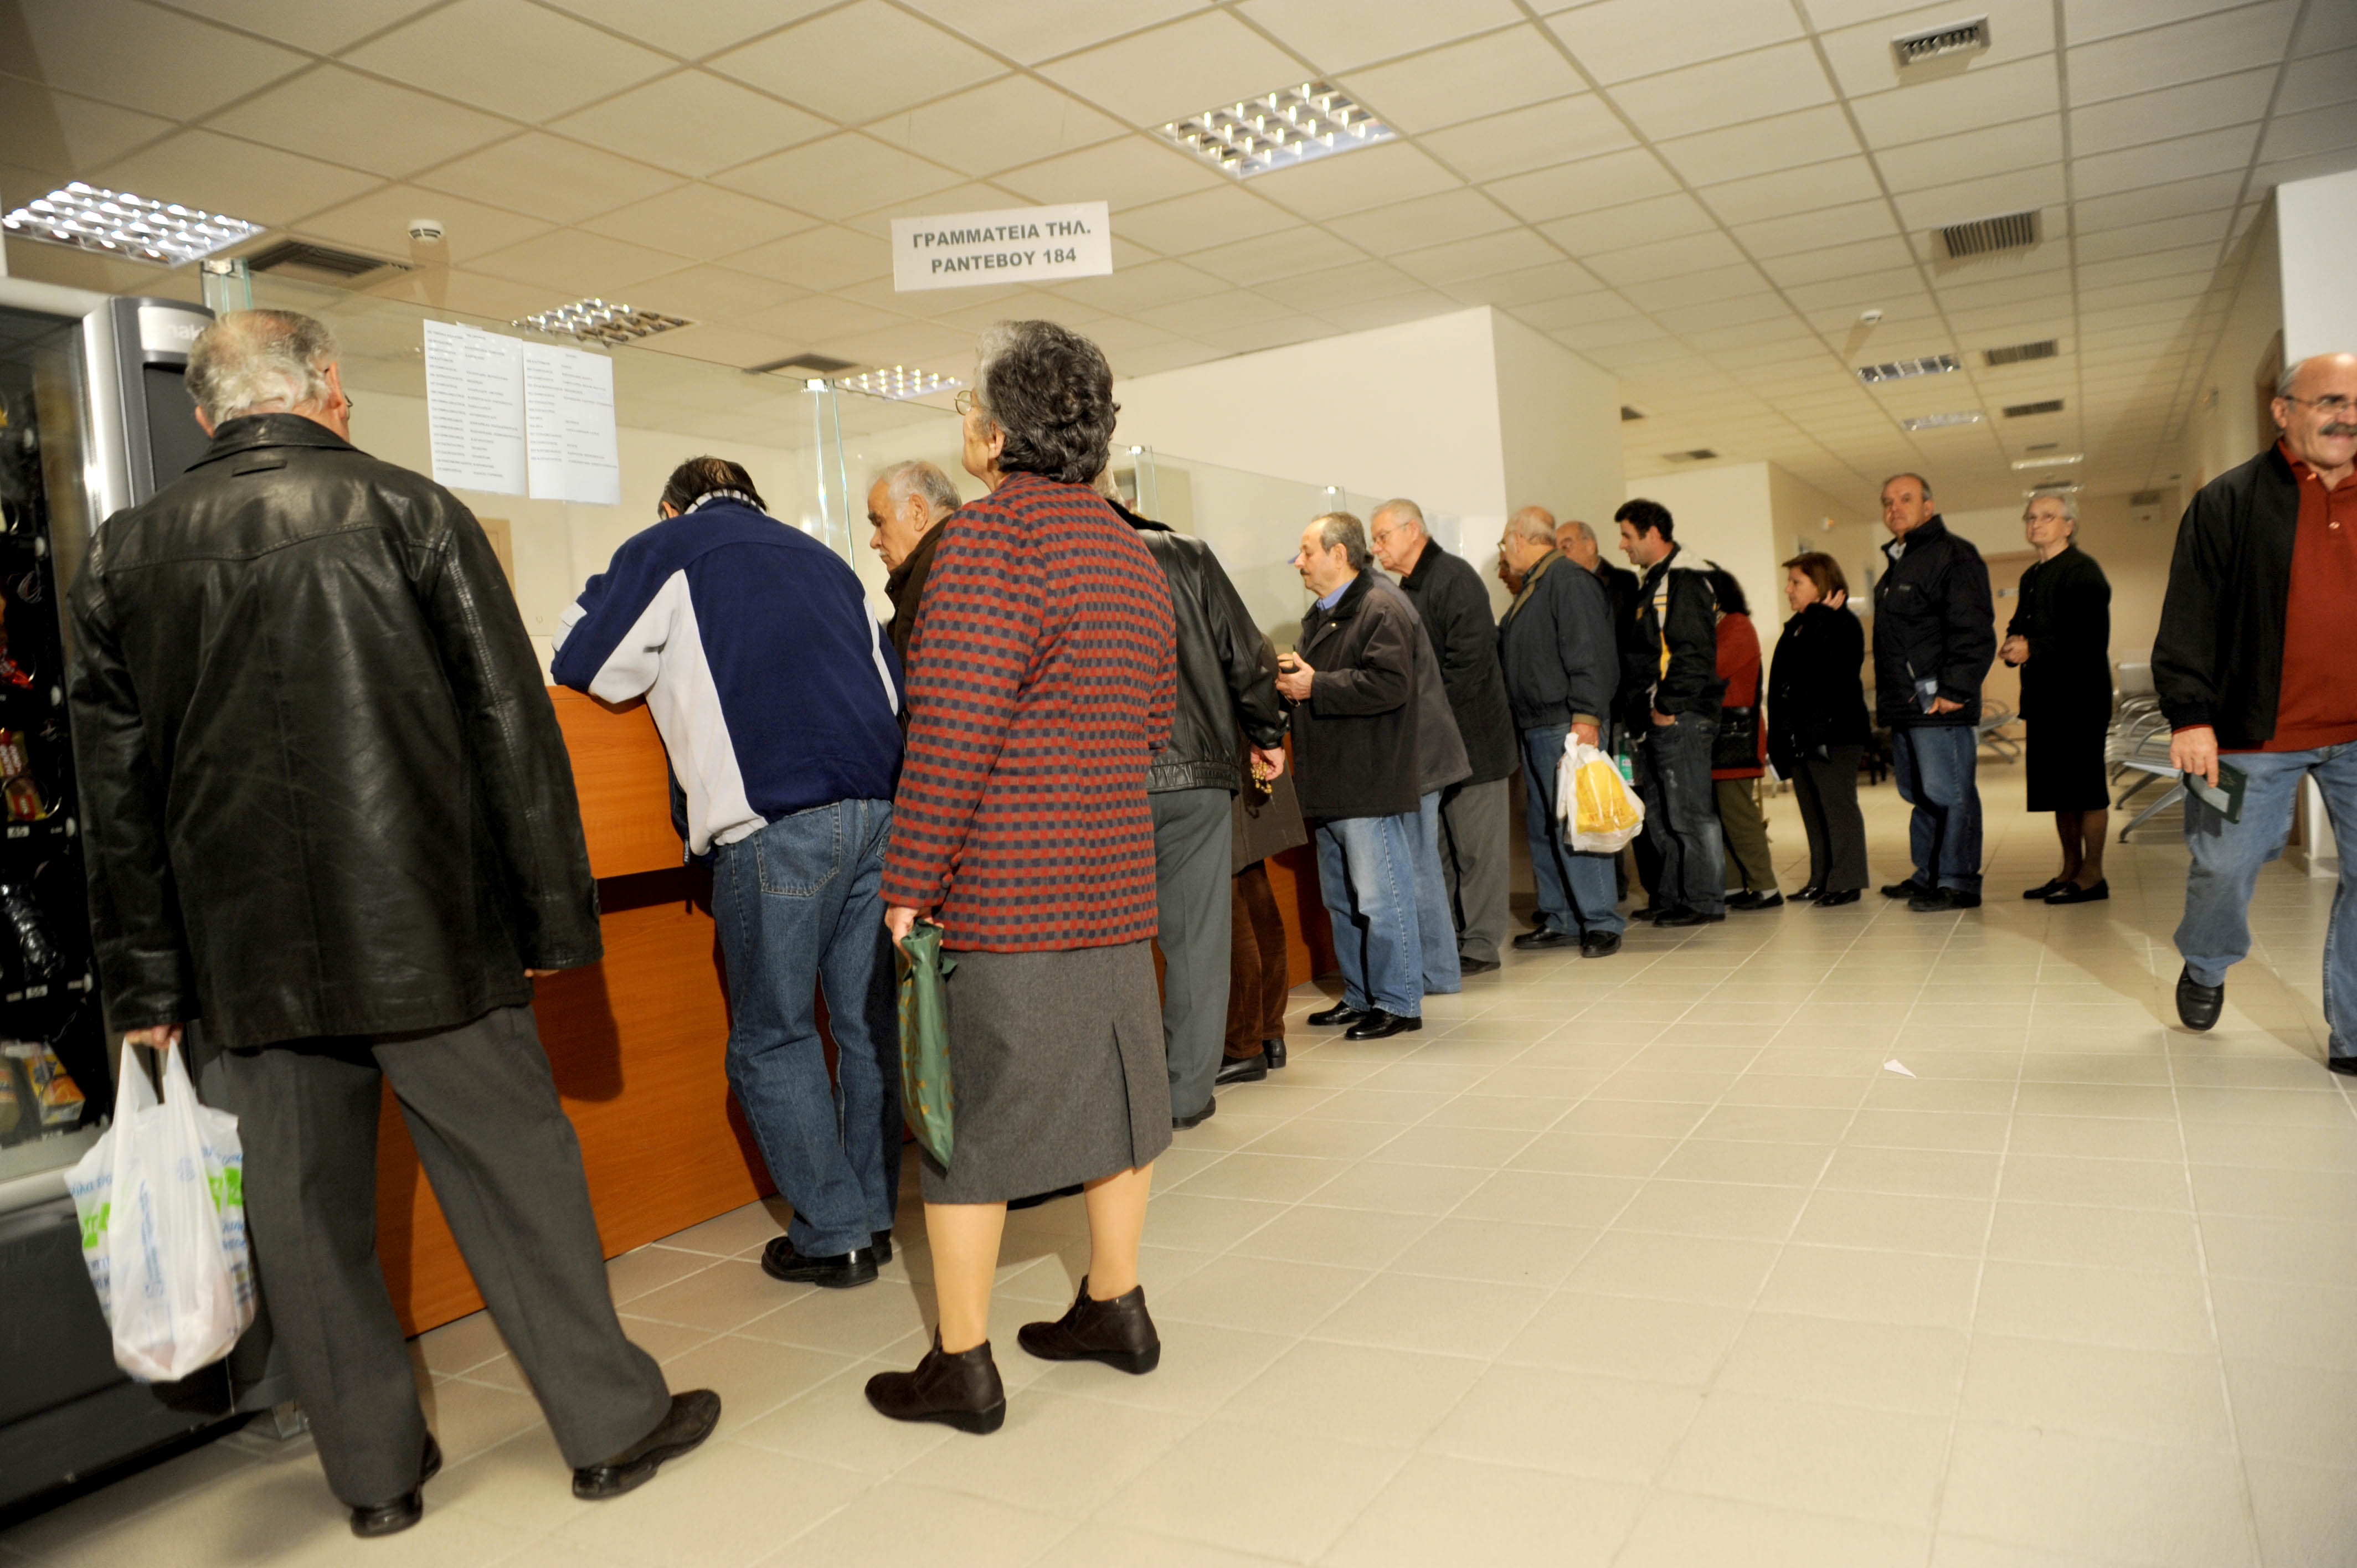 Χώρα των συνταξιούχων και των ανέργων η Ελλάδα